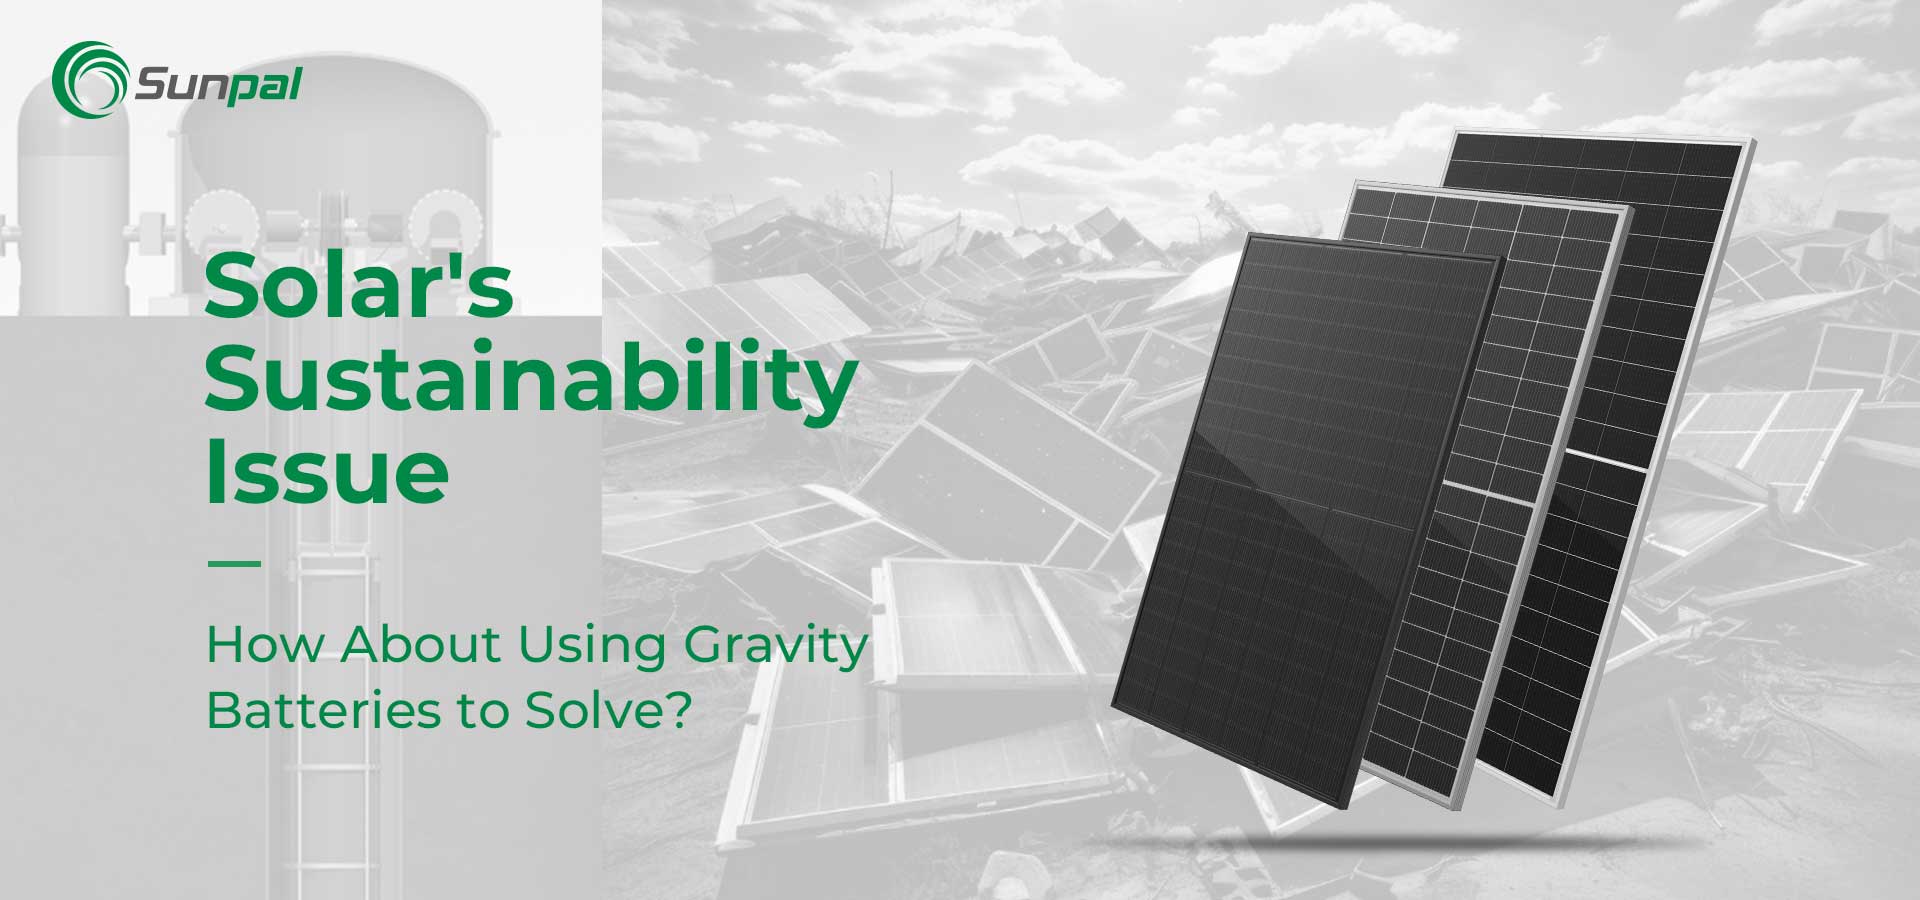 La cuestión de la sostenibilidad de la energía solar | ¿Usar baterías de gravedad para hacer frente?